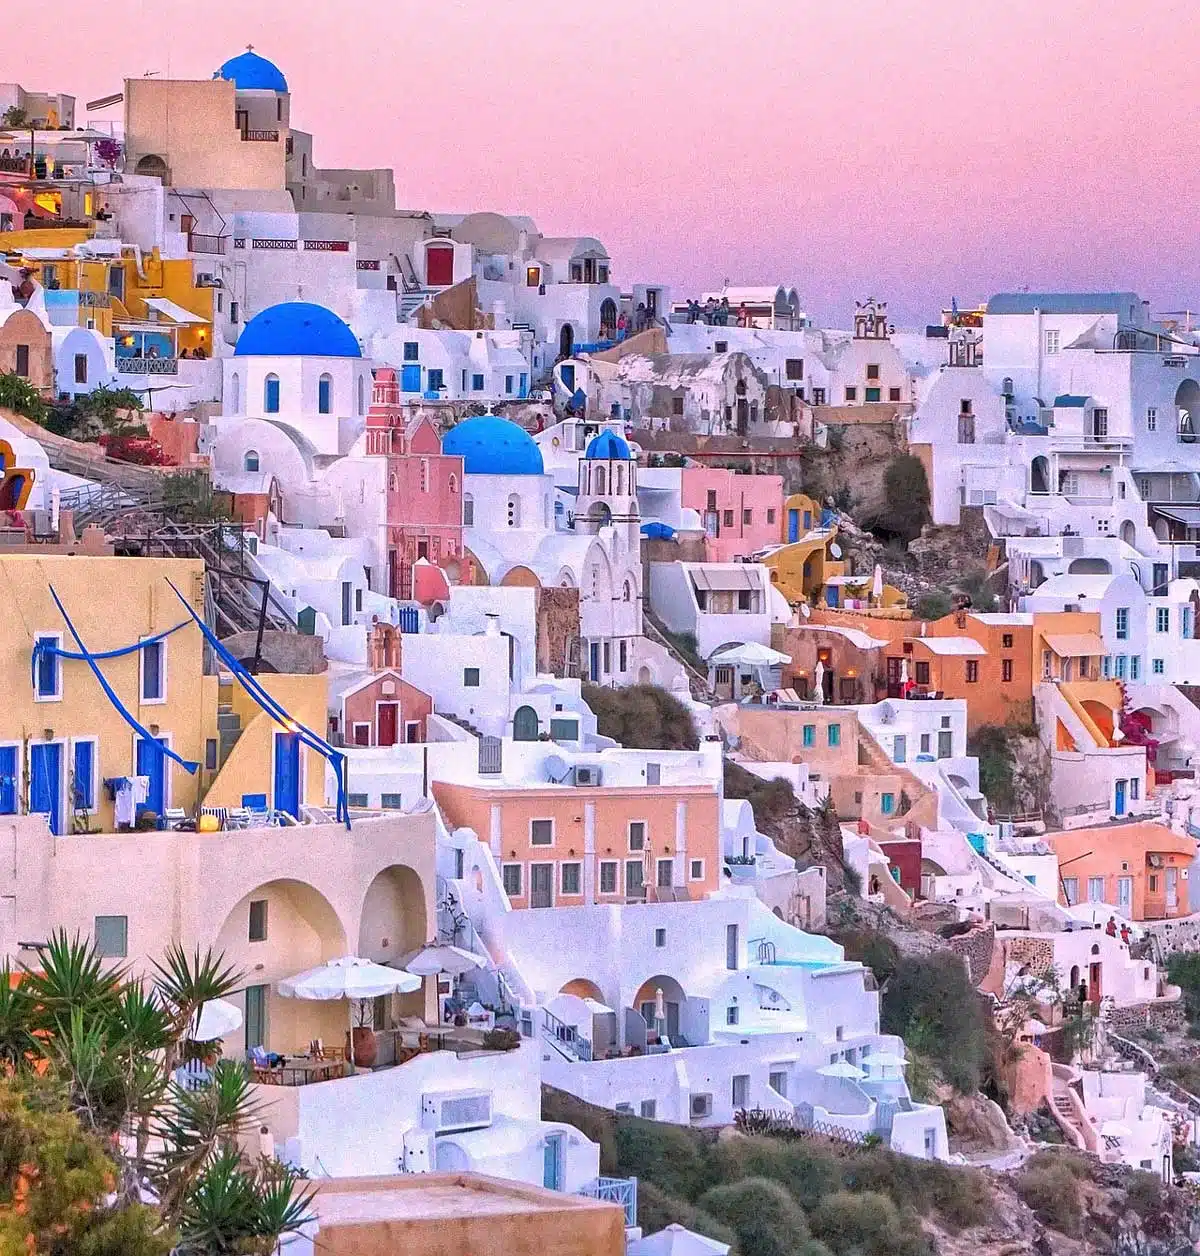 Meilleures destinations de vacances en Grèce - Santorin